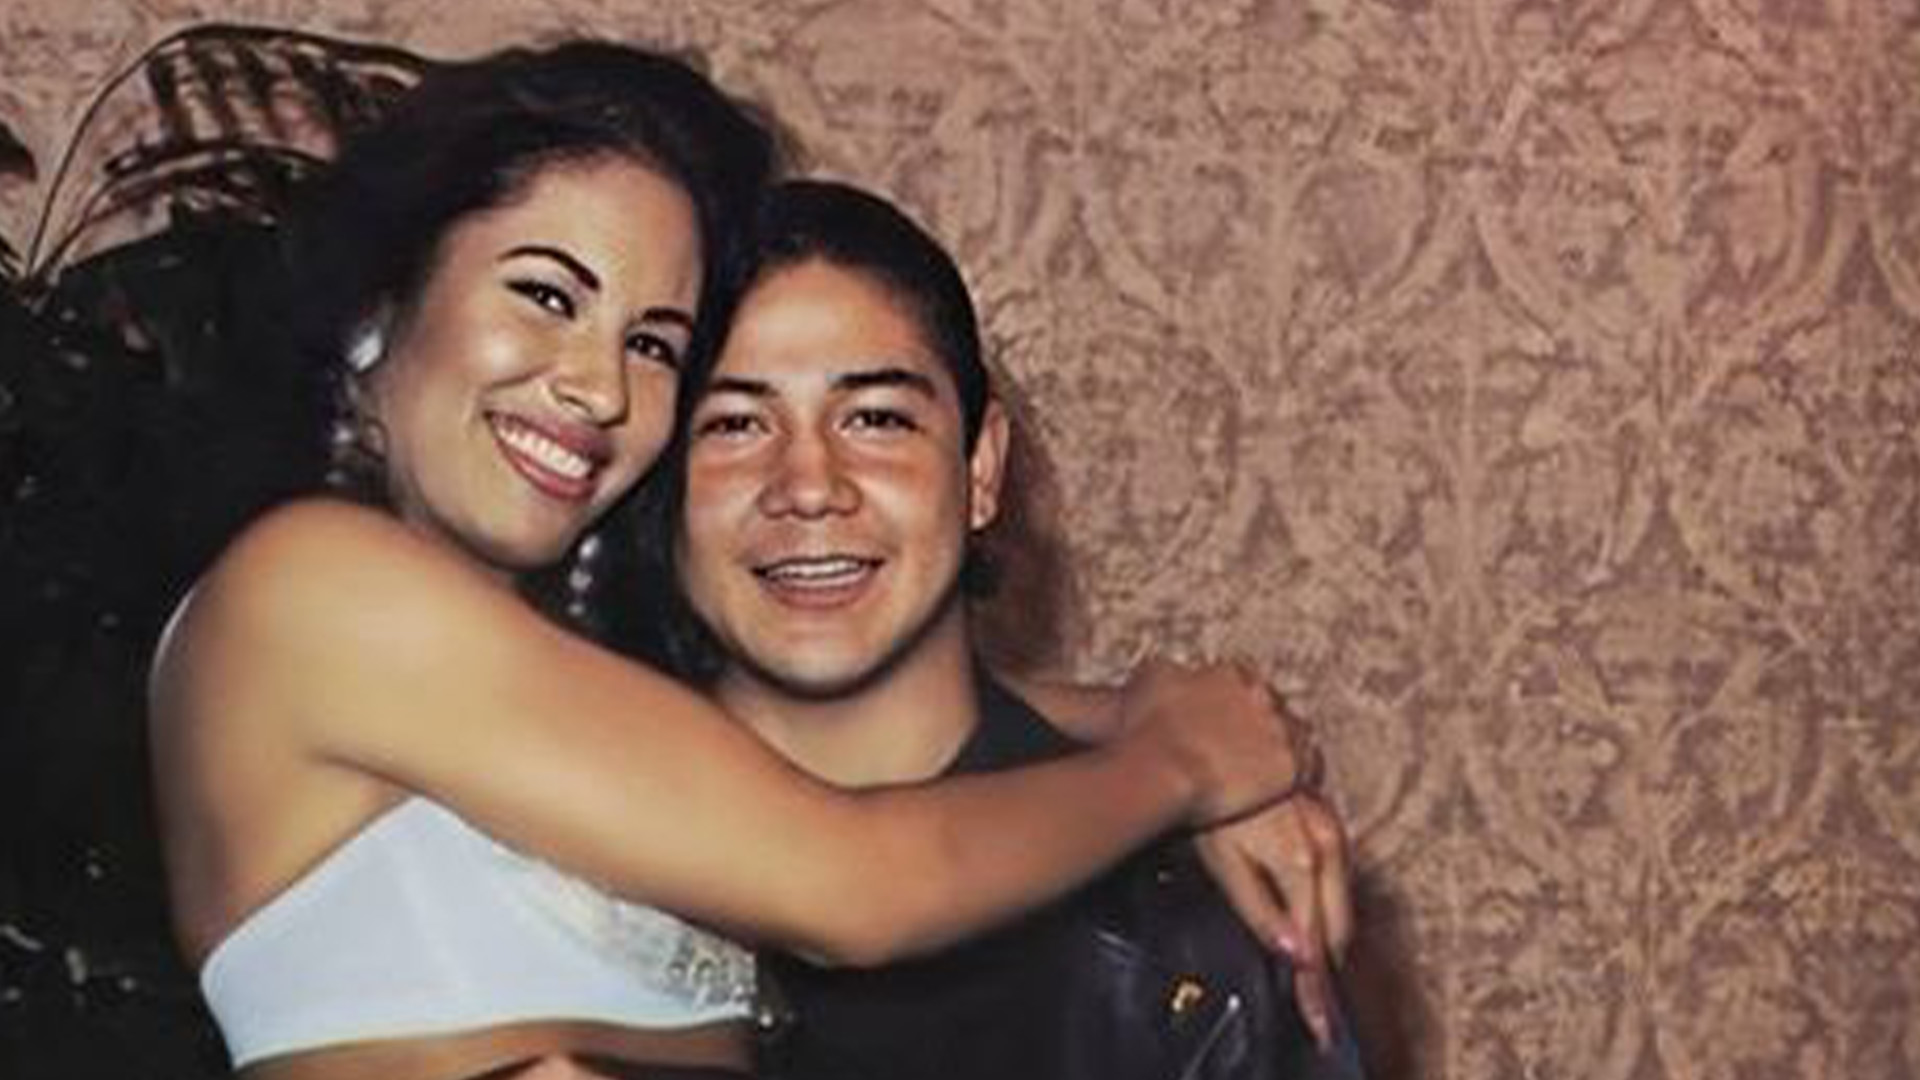 Pasados 28 años del asesinato: Chris Pérez, viudo de Selena Quintanilla habló por primera vez en televisión